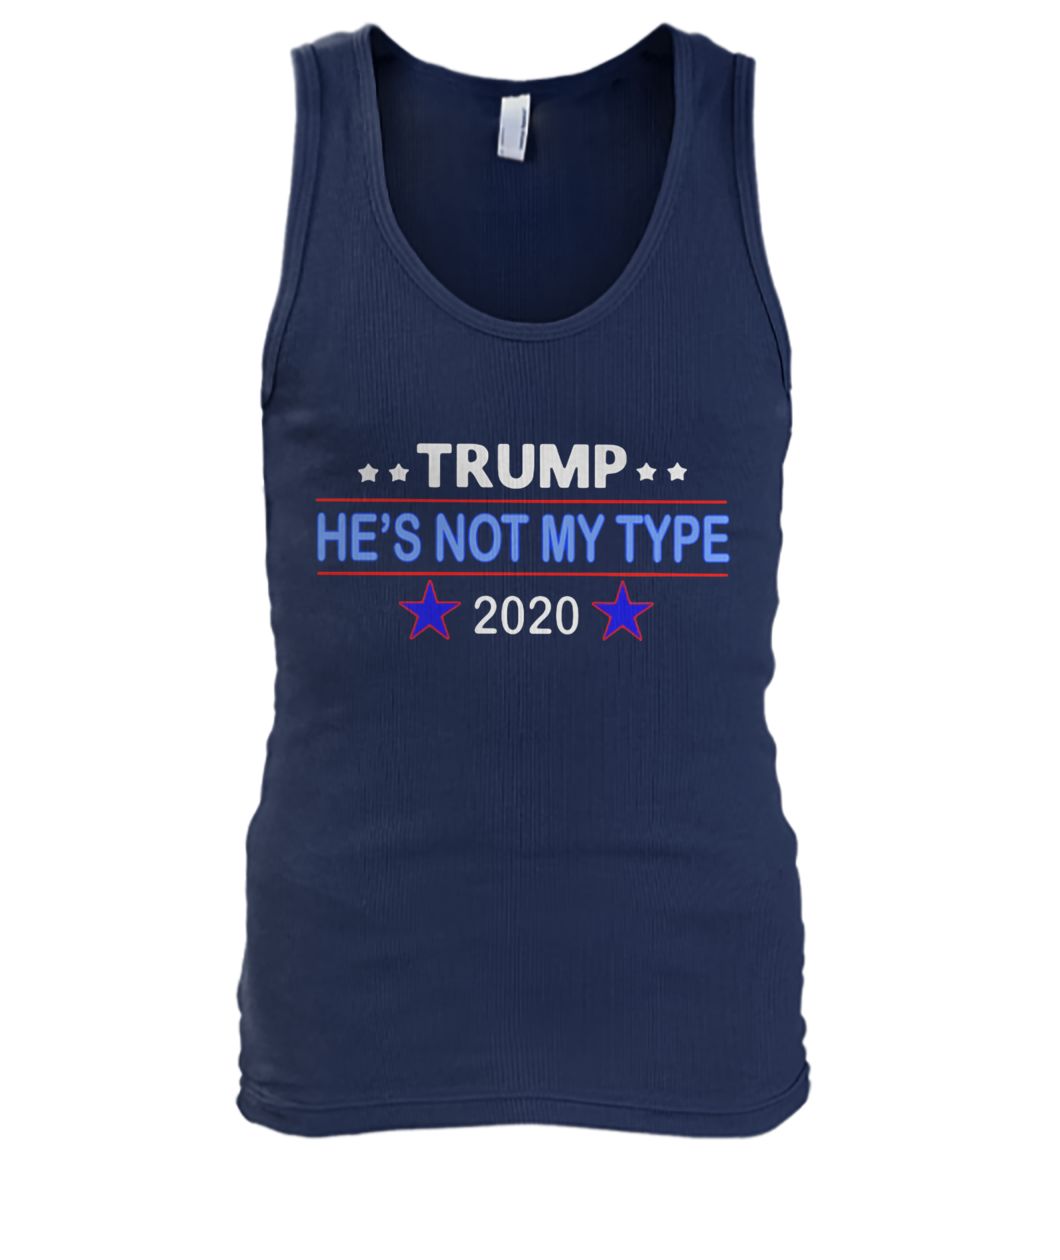 Trump he's not my type 2020 men's tank top